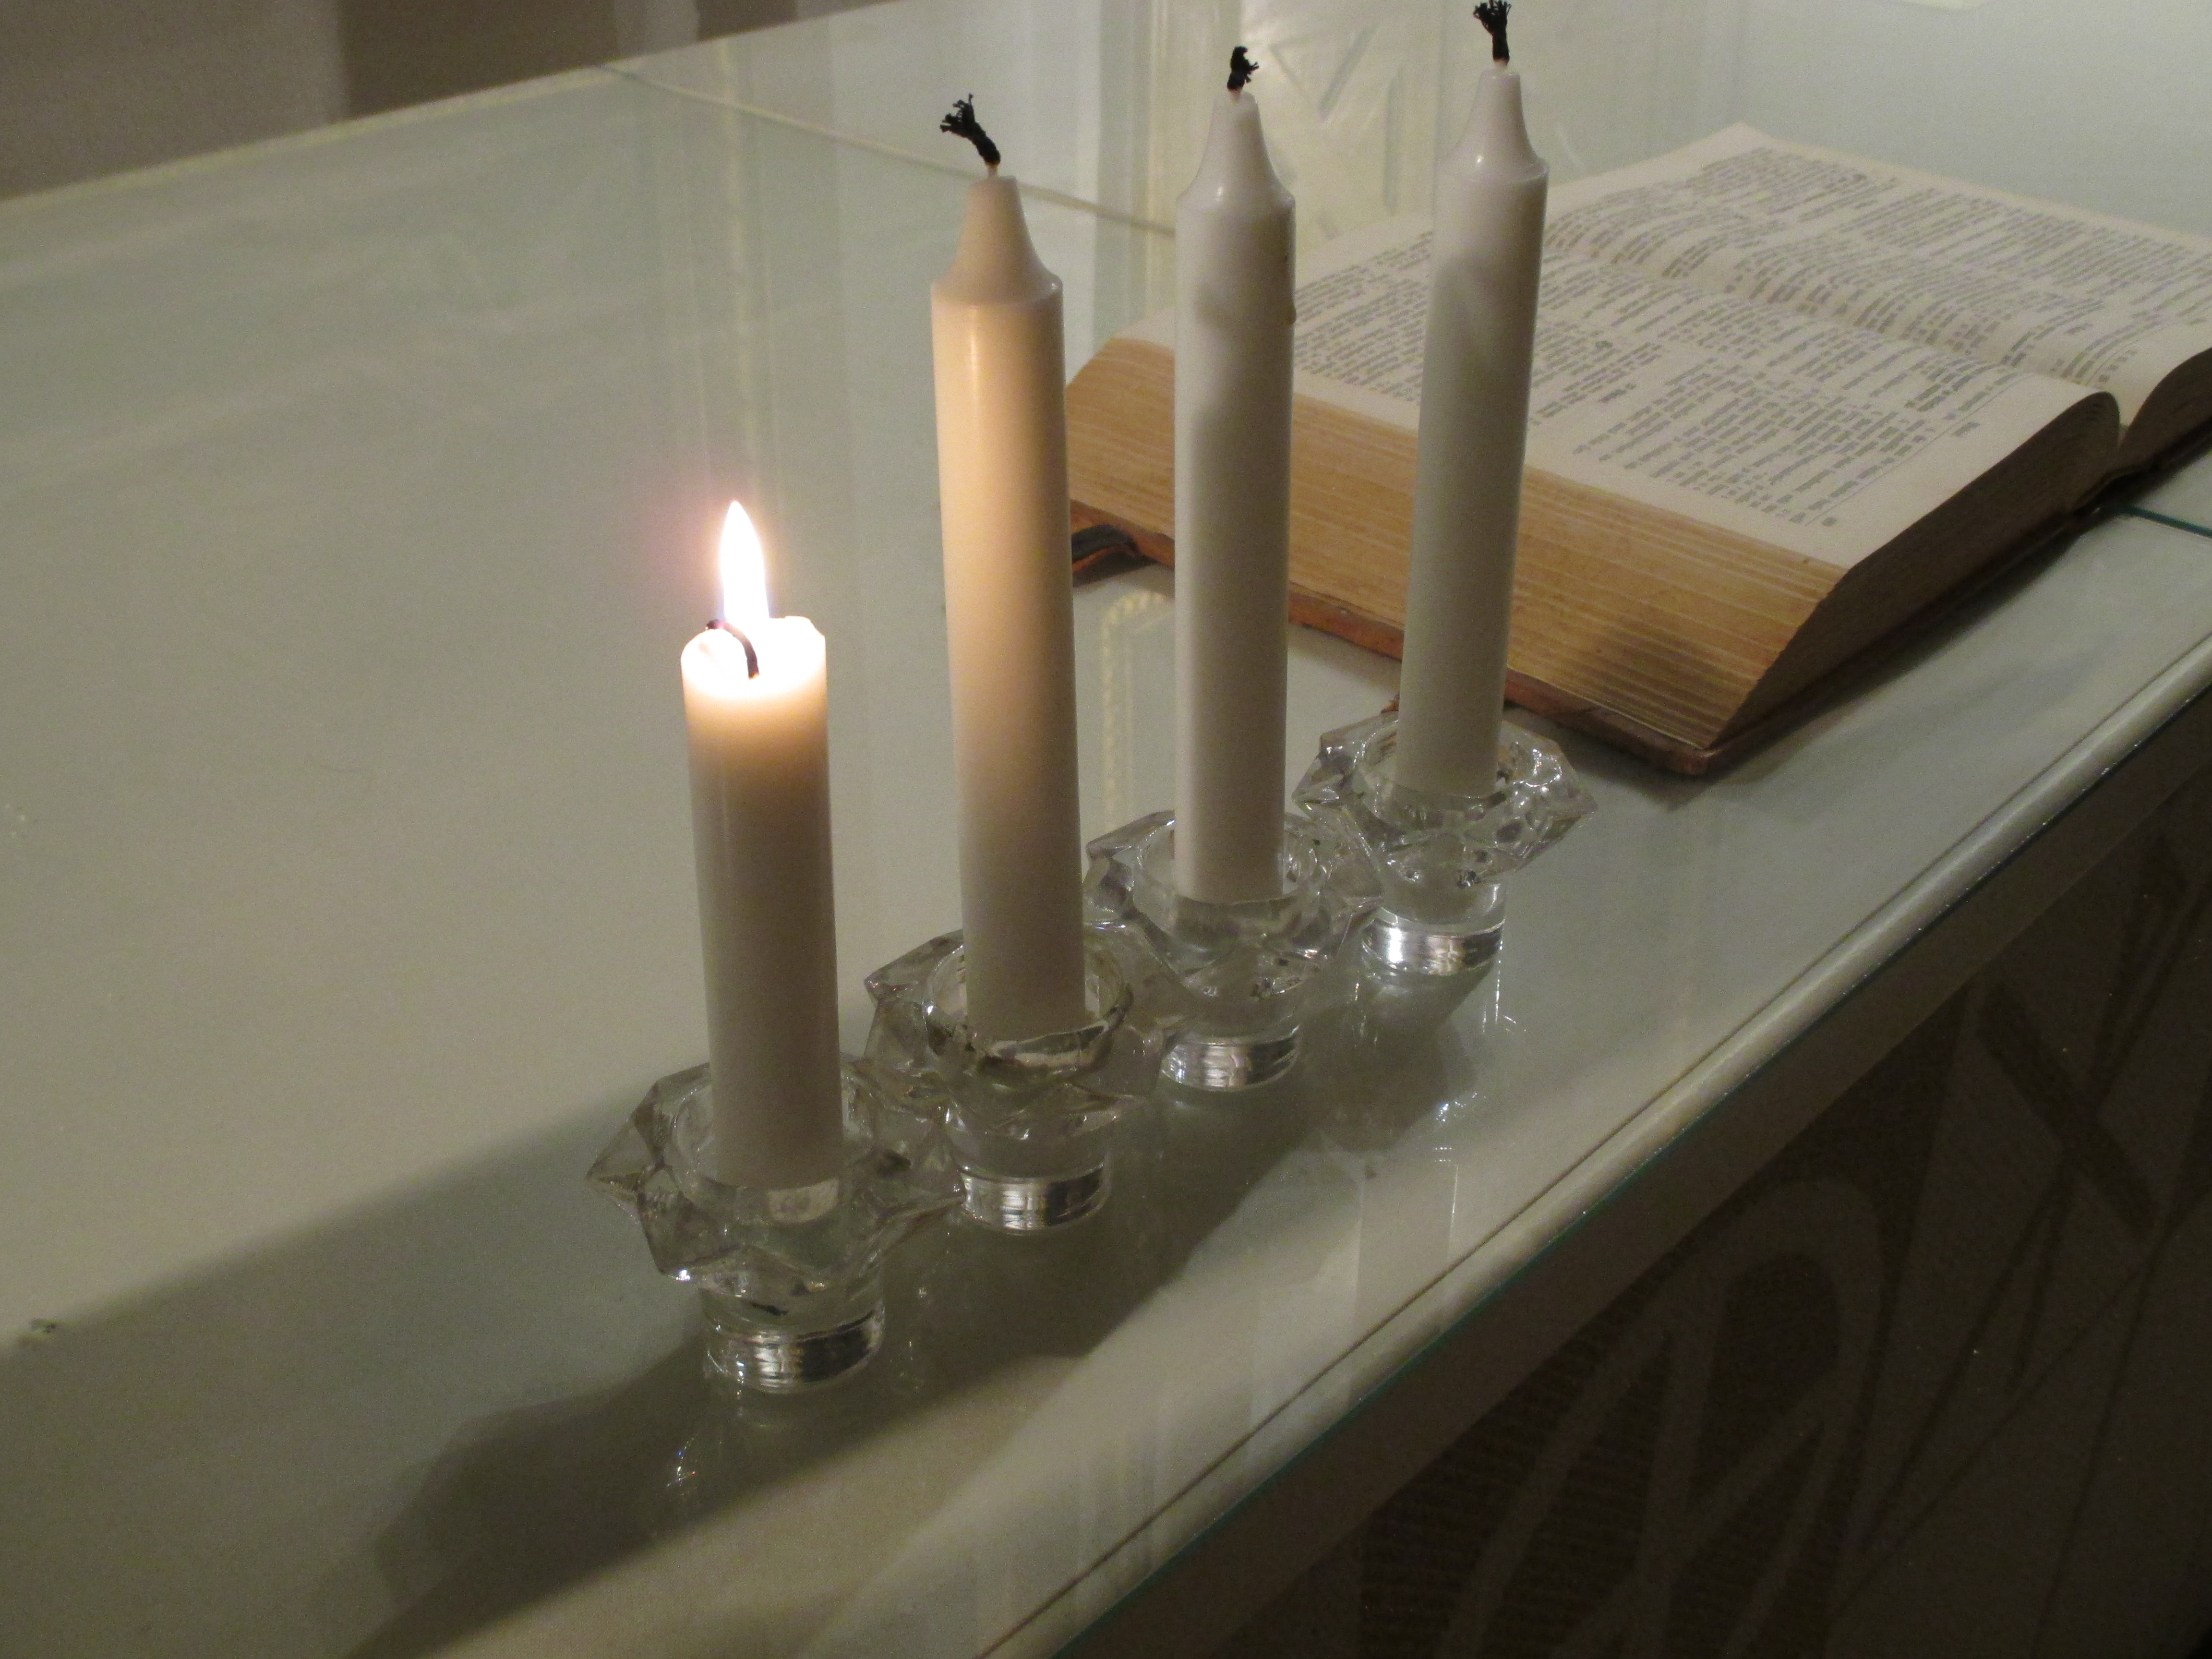 Valkoisella liinalla katetulla pöydällä on lasisissa kynttilänjaloissa rivissä neljä kynttilää ja taempana avattu Raamattu.  Sytytettynä on vain yksi kynttilä, joka on ehtinyt palaa lyhyemmäksi kuin muut.